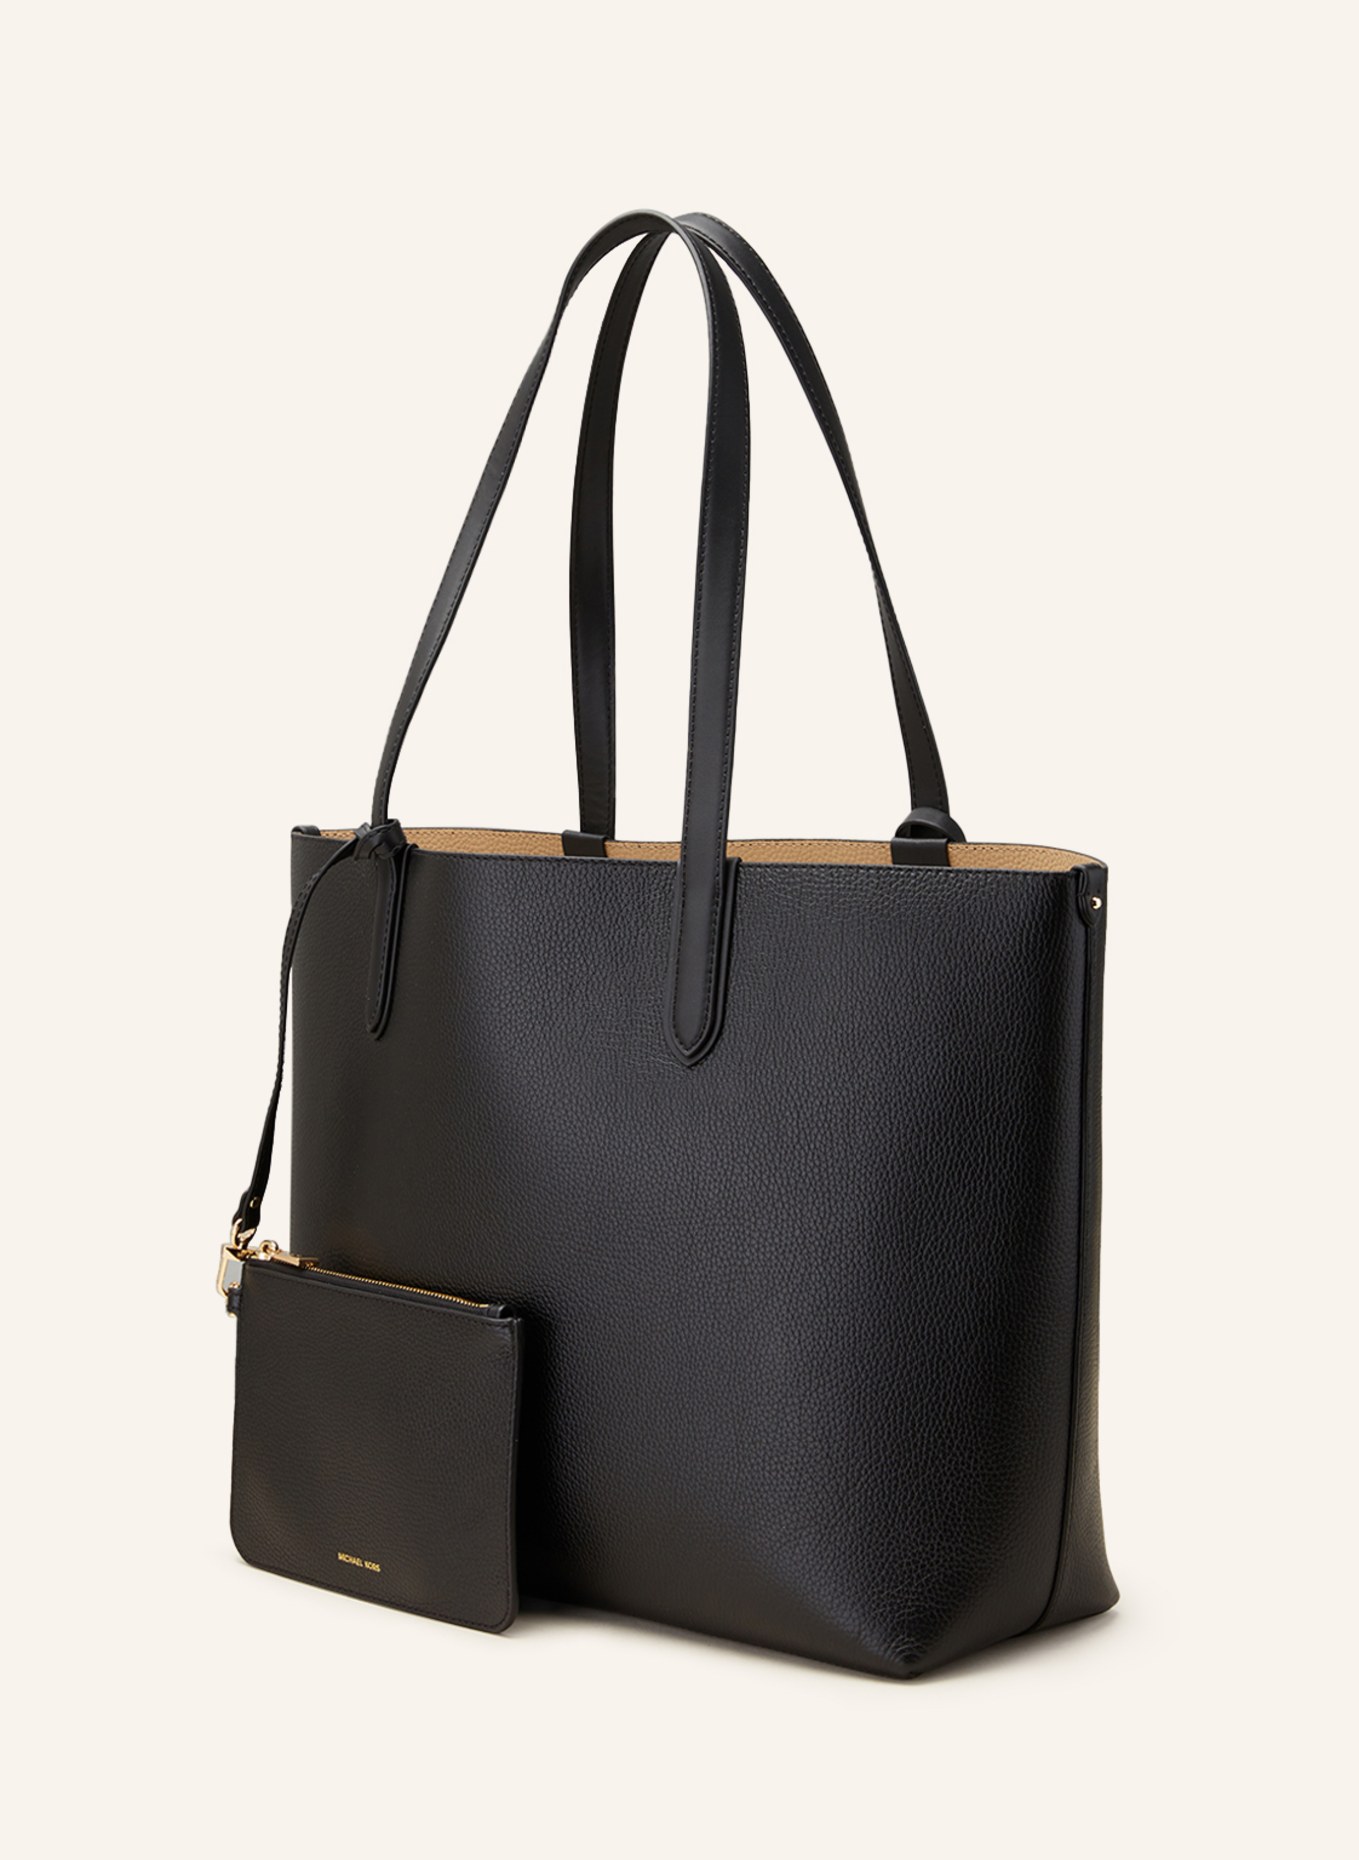 MICHAEL KORS Reversible shopper ELIZA with pouch, Color: BLACK (Image 2)